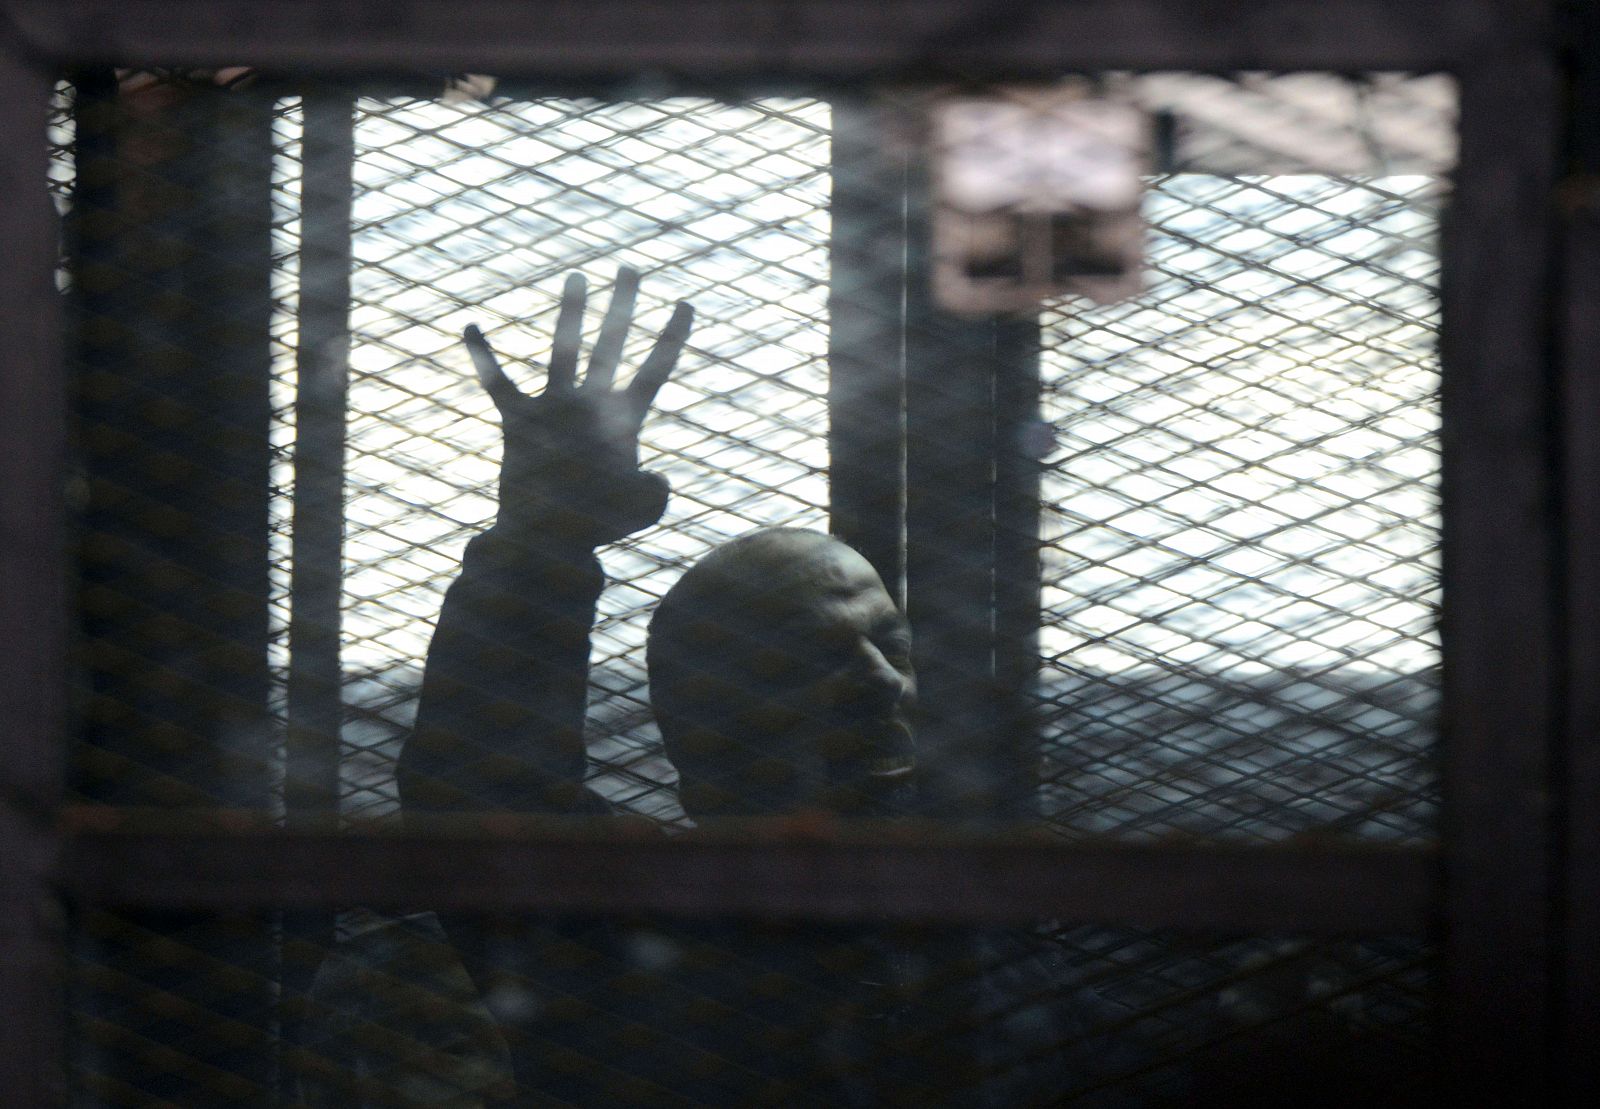 Imagen del mes pasado de un proceso al líder de los Hermanos Musulmanes Mohamed el-Beltagy, que levanta cuatro dedos en un símbolo de protesta contra la represión a los islamistas.